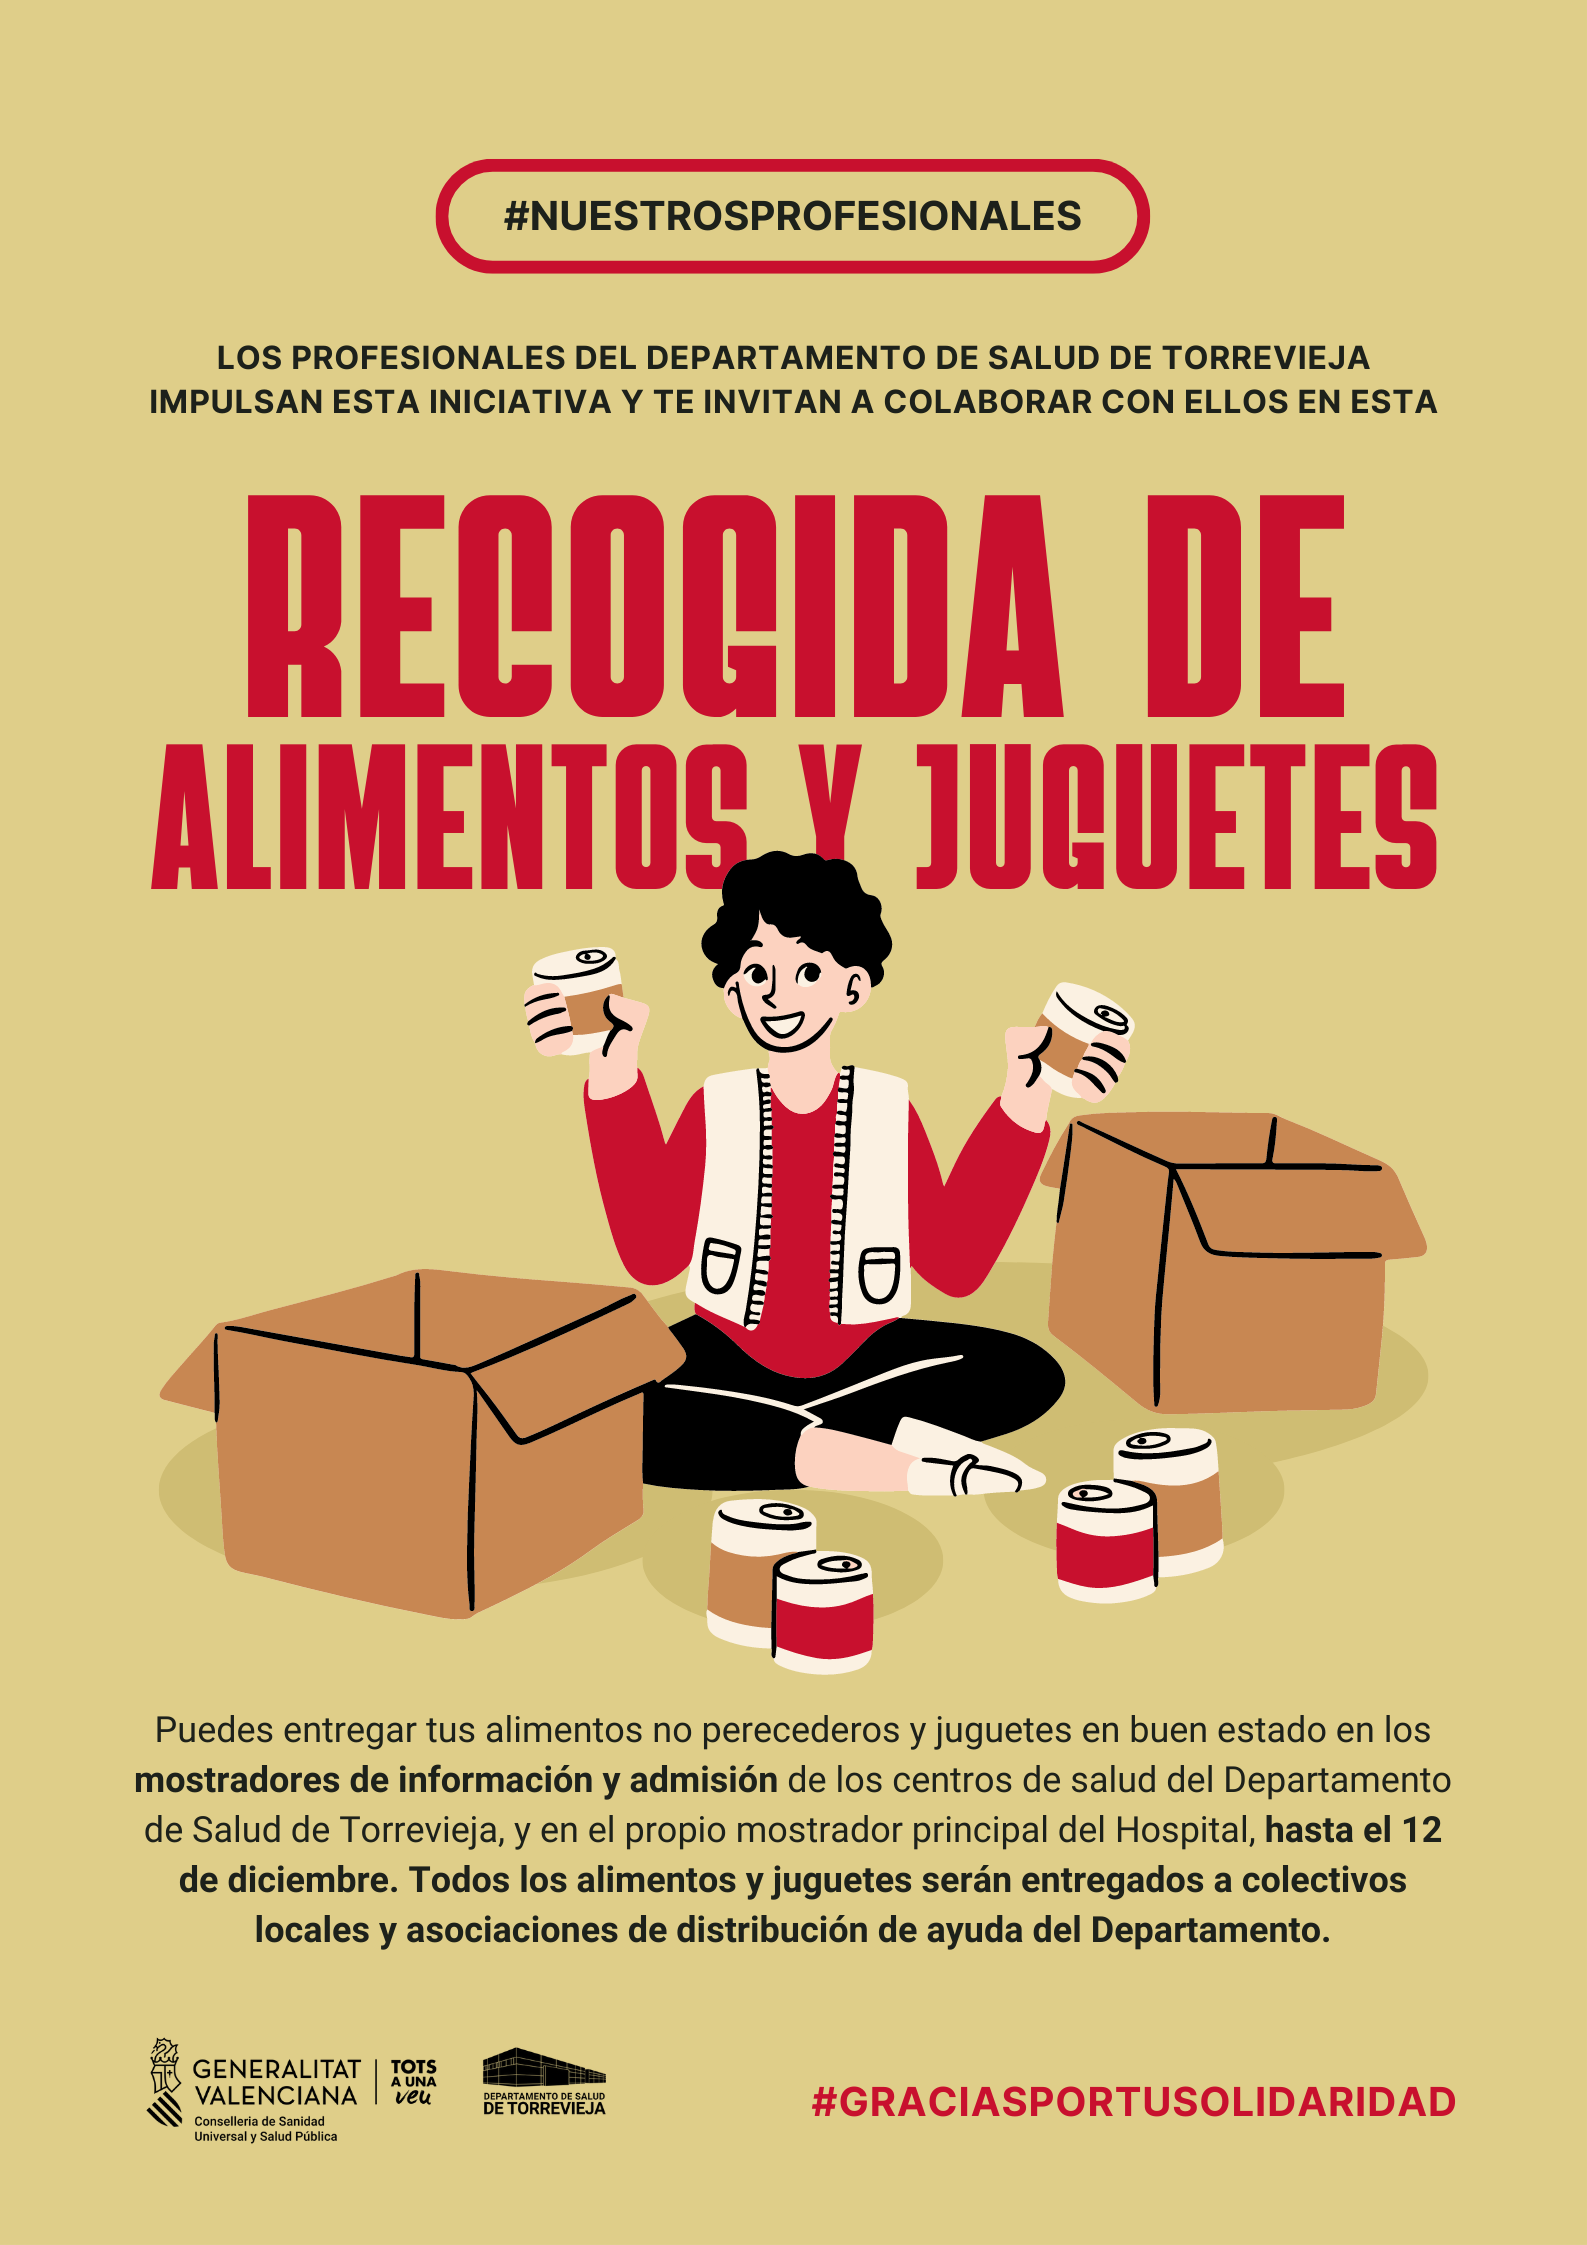 Profesionales del departamento de salud de Torrevieja inician una campaña de recogida de alimentos y